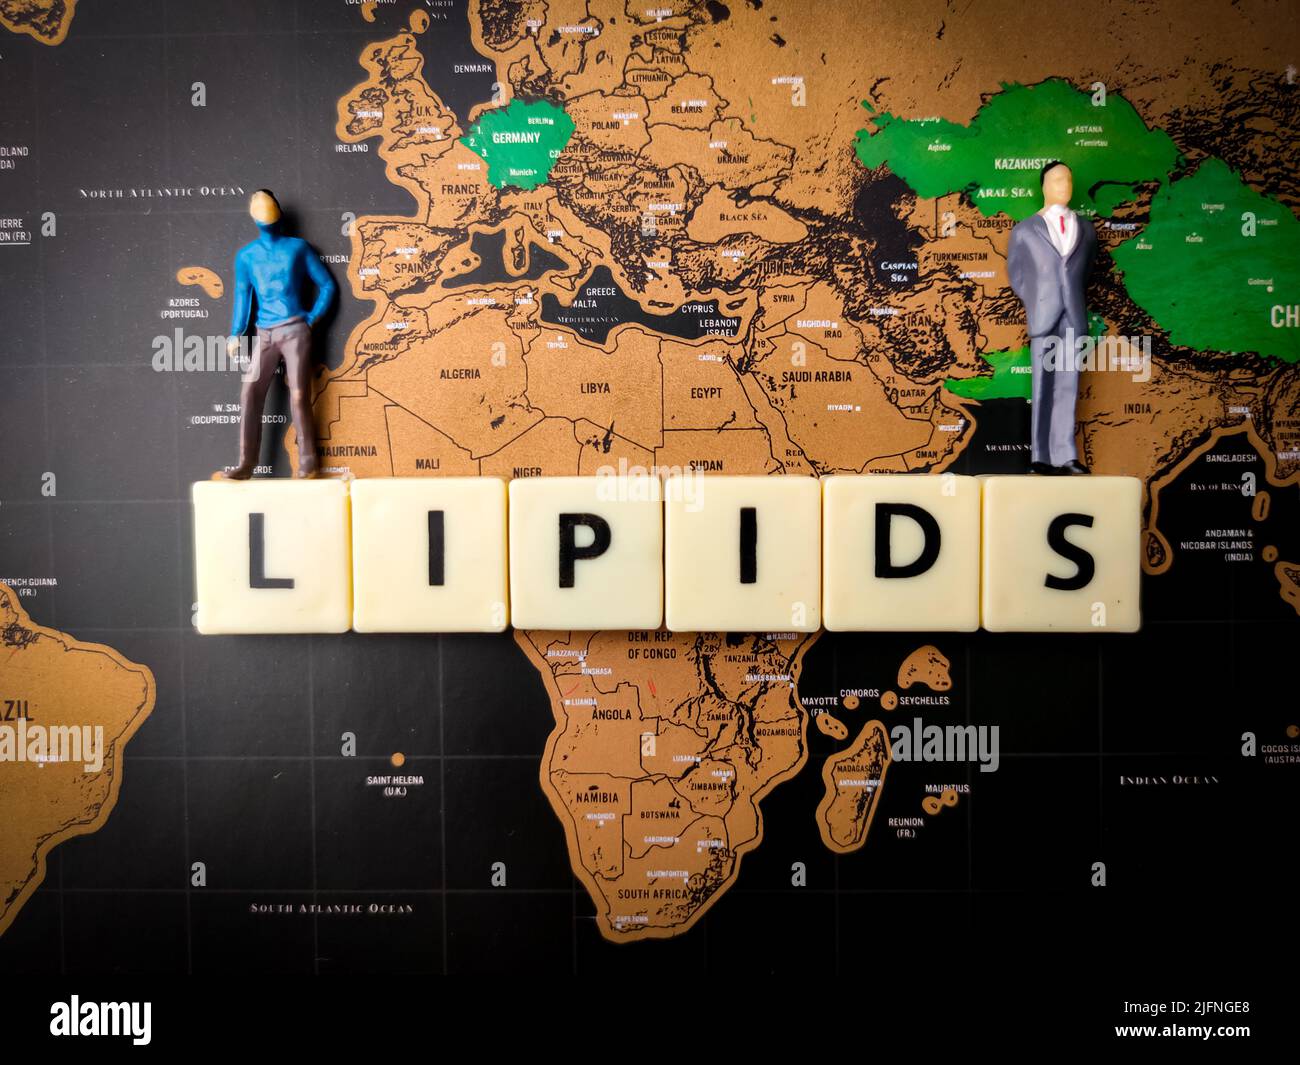 Vue de dessus des figurines miniatures et du texte 'LIPIDEs' sur un fond de carte du monde Banque D'Images